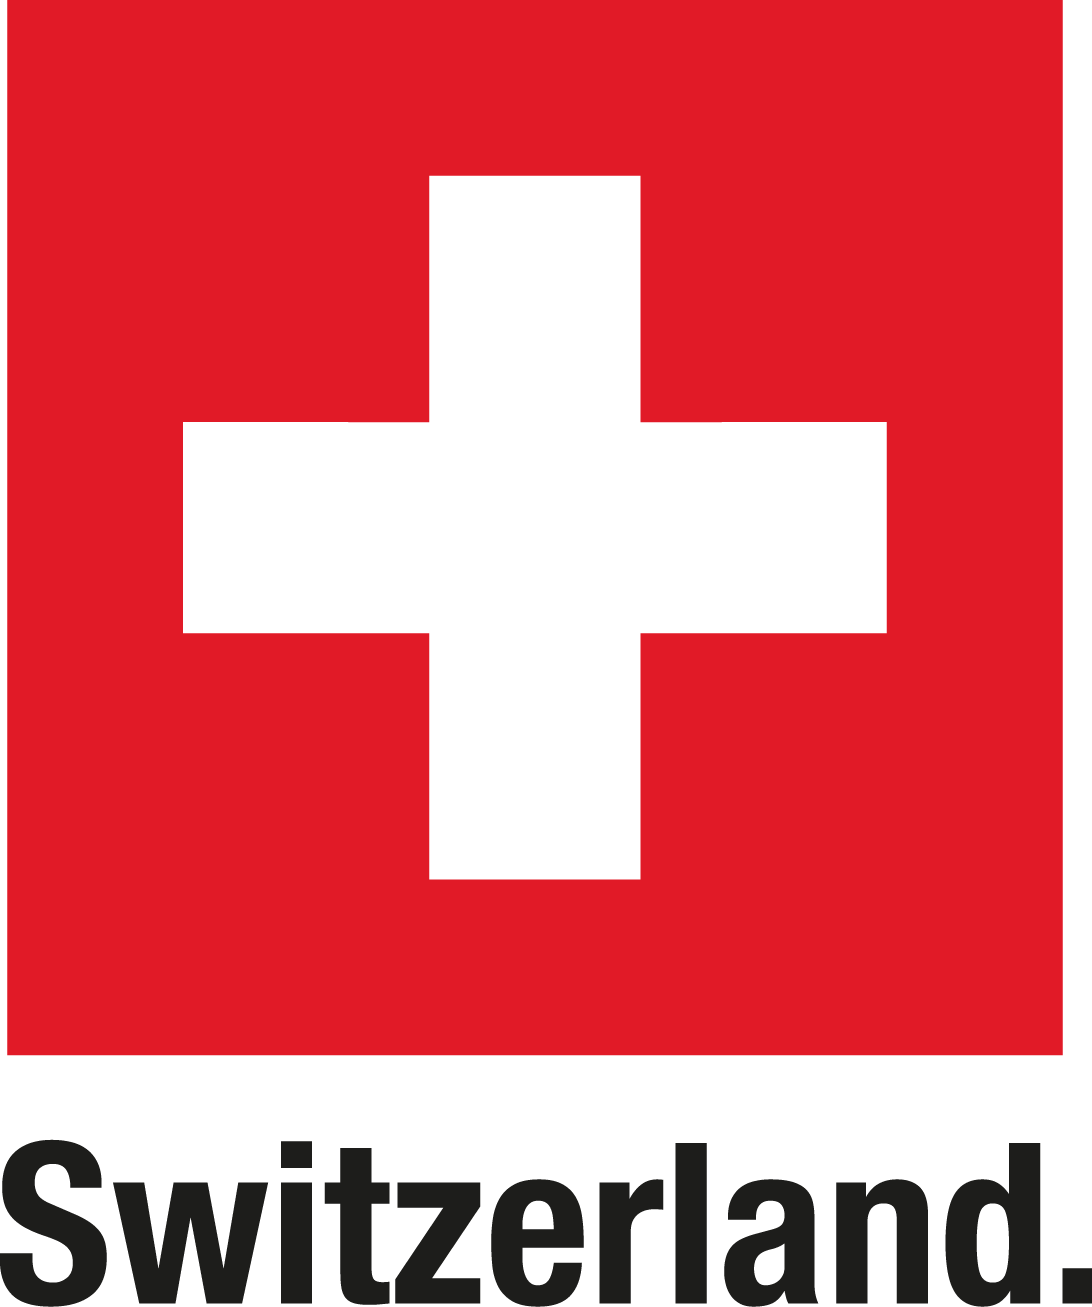 Agenția Elvețiană pentru Dezvoltare și Cooperare